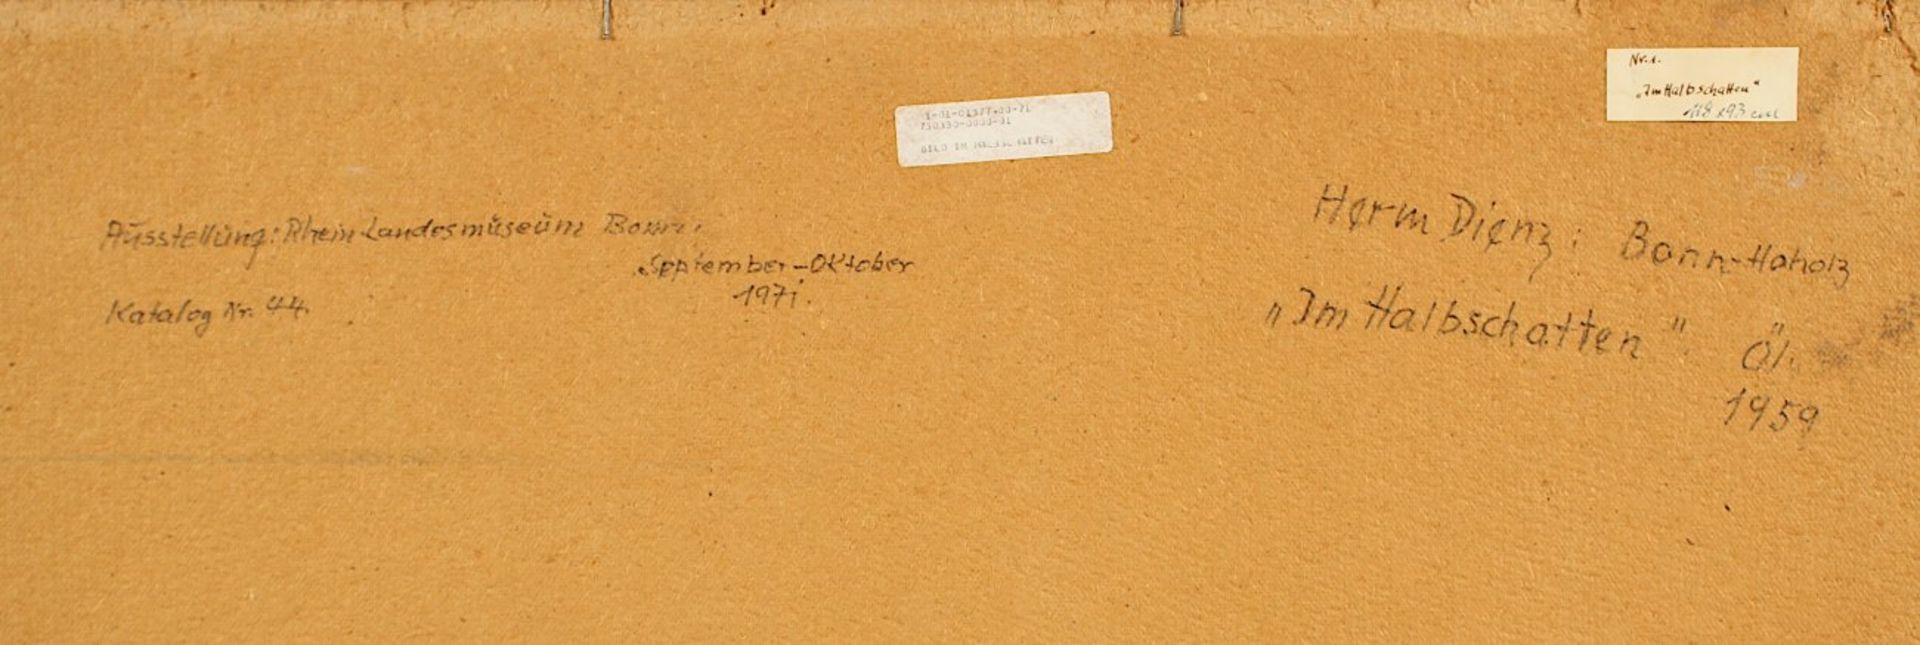 DIENZ, Herm, "Im Halbschatten", Öl/Hartfaser, 118 x 93, unten rechts signiert und datiert, verso - Bild 3 aus 5